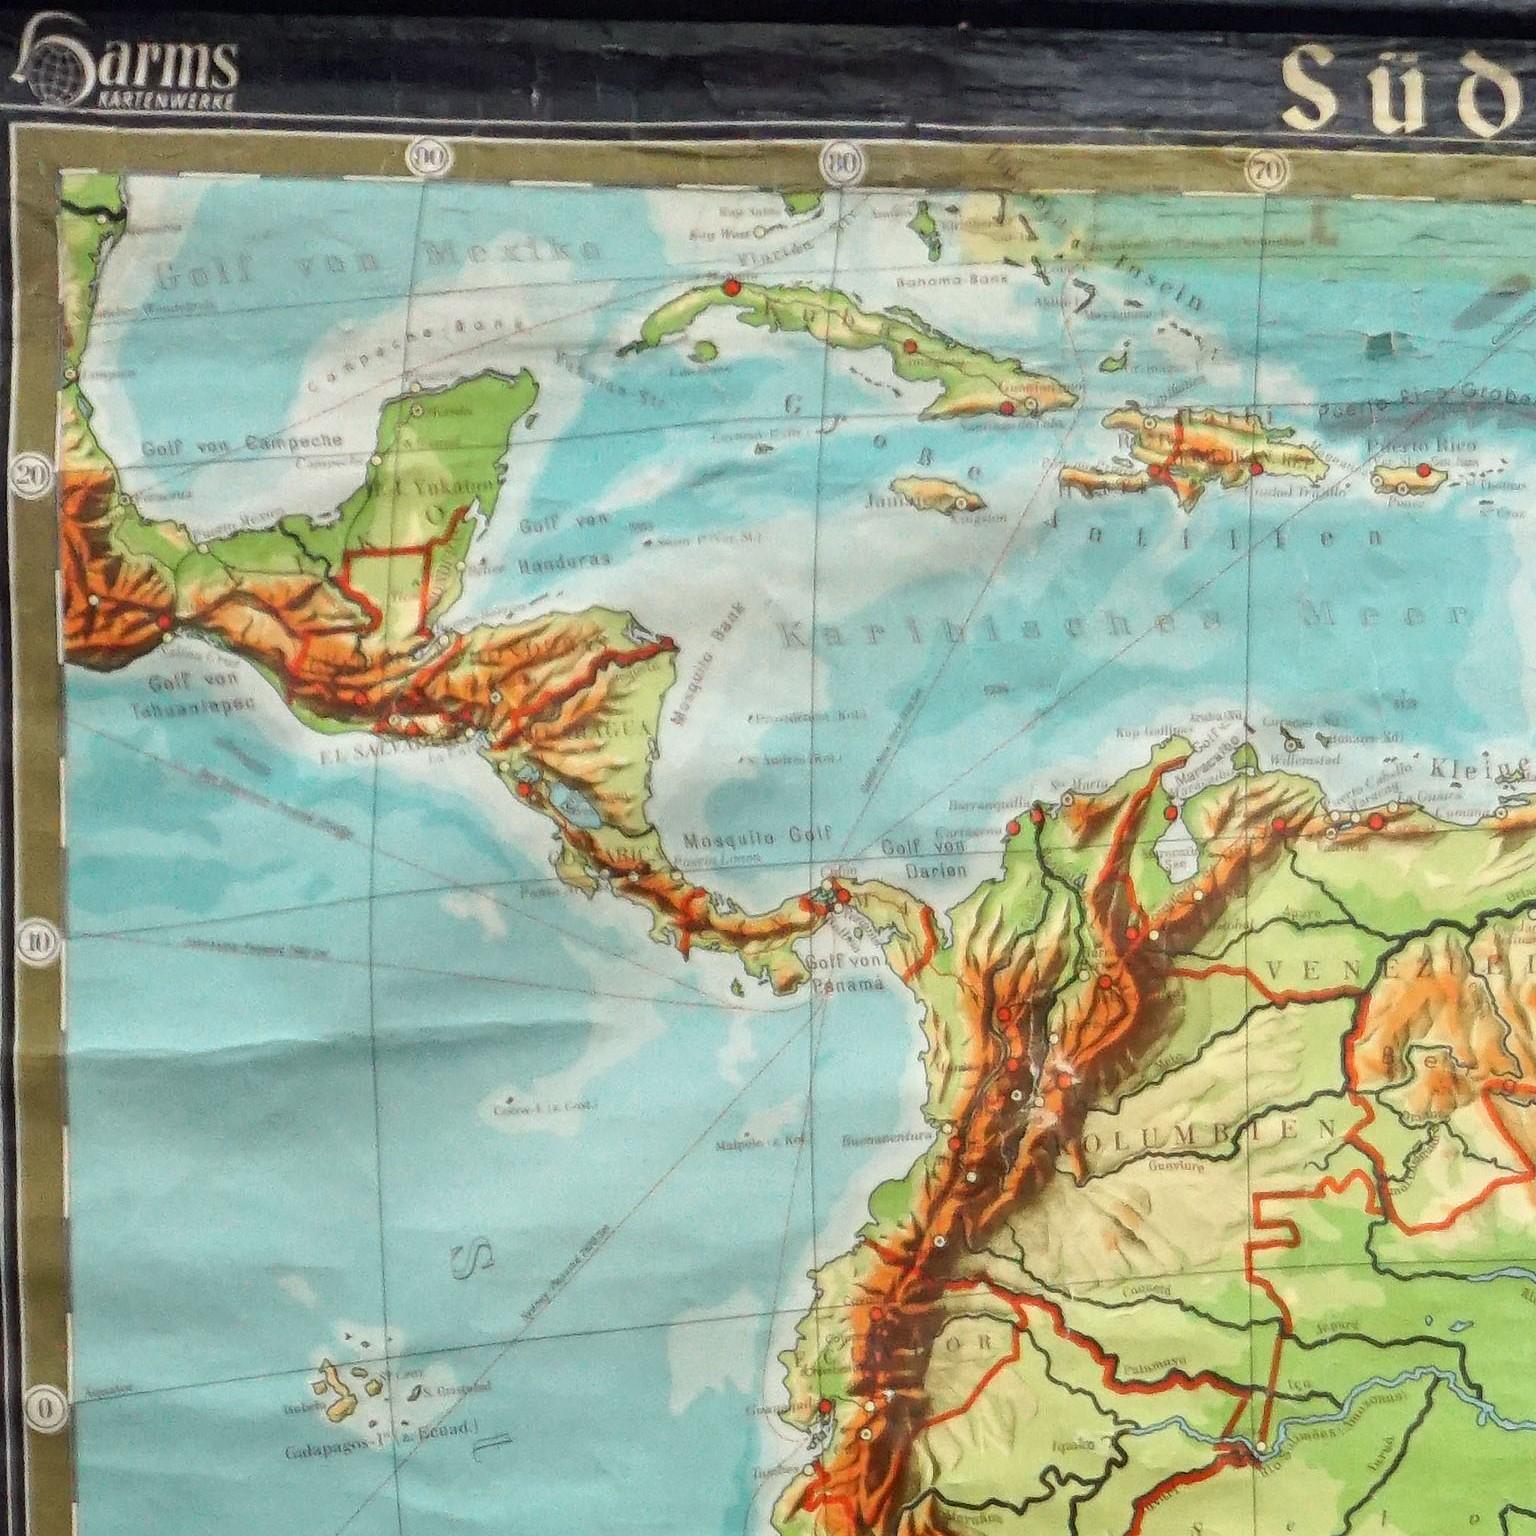 La carte murale présente l'Amérique du Sud sous la forme d'une combinaison de cartes physiques et politiques, l'accent étant mis sur la topologie du continent. Il a été édité dans sa troisième édition par W. Eggers et publié sous le titre de Harms